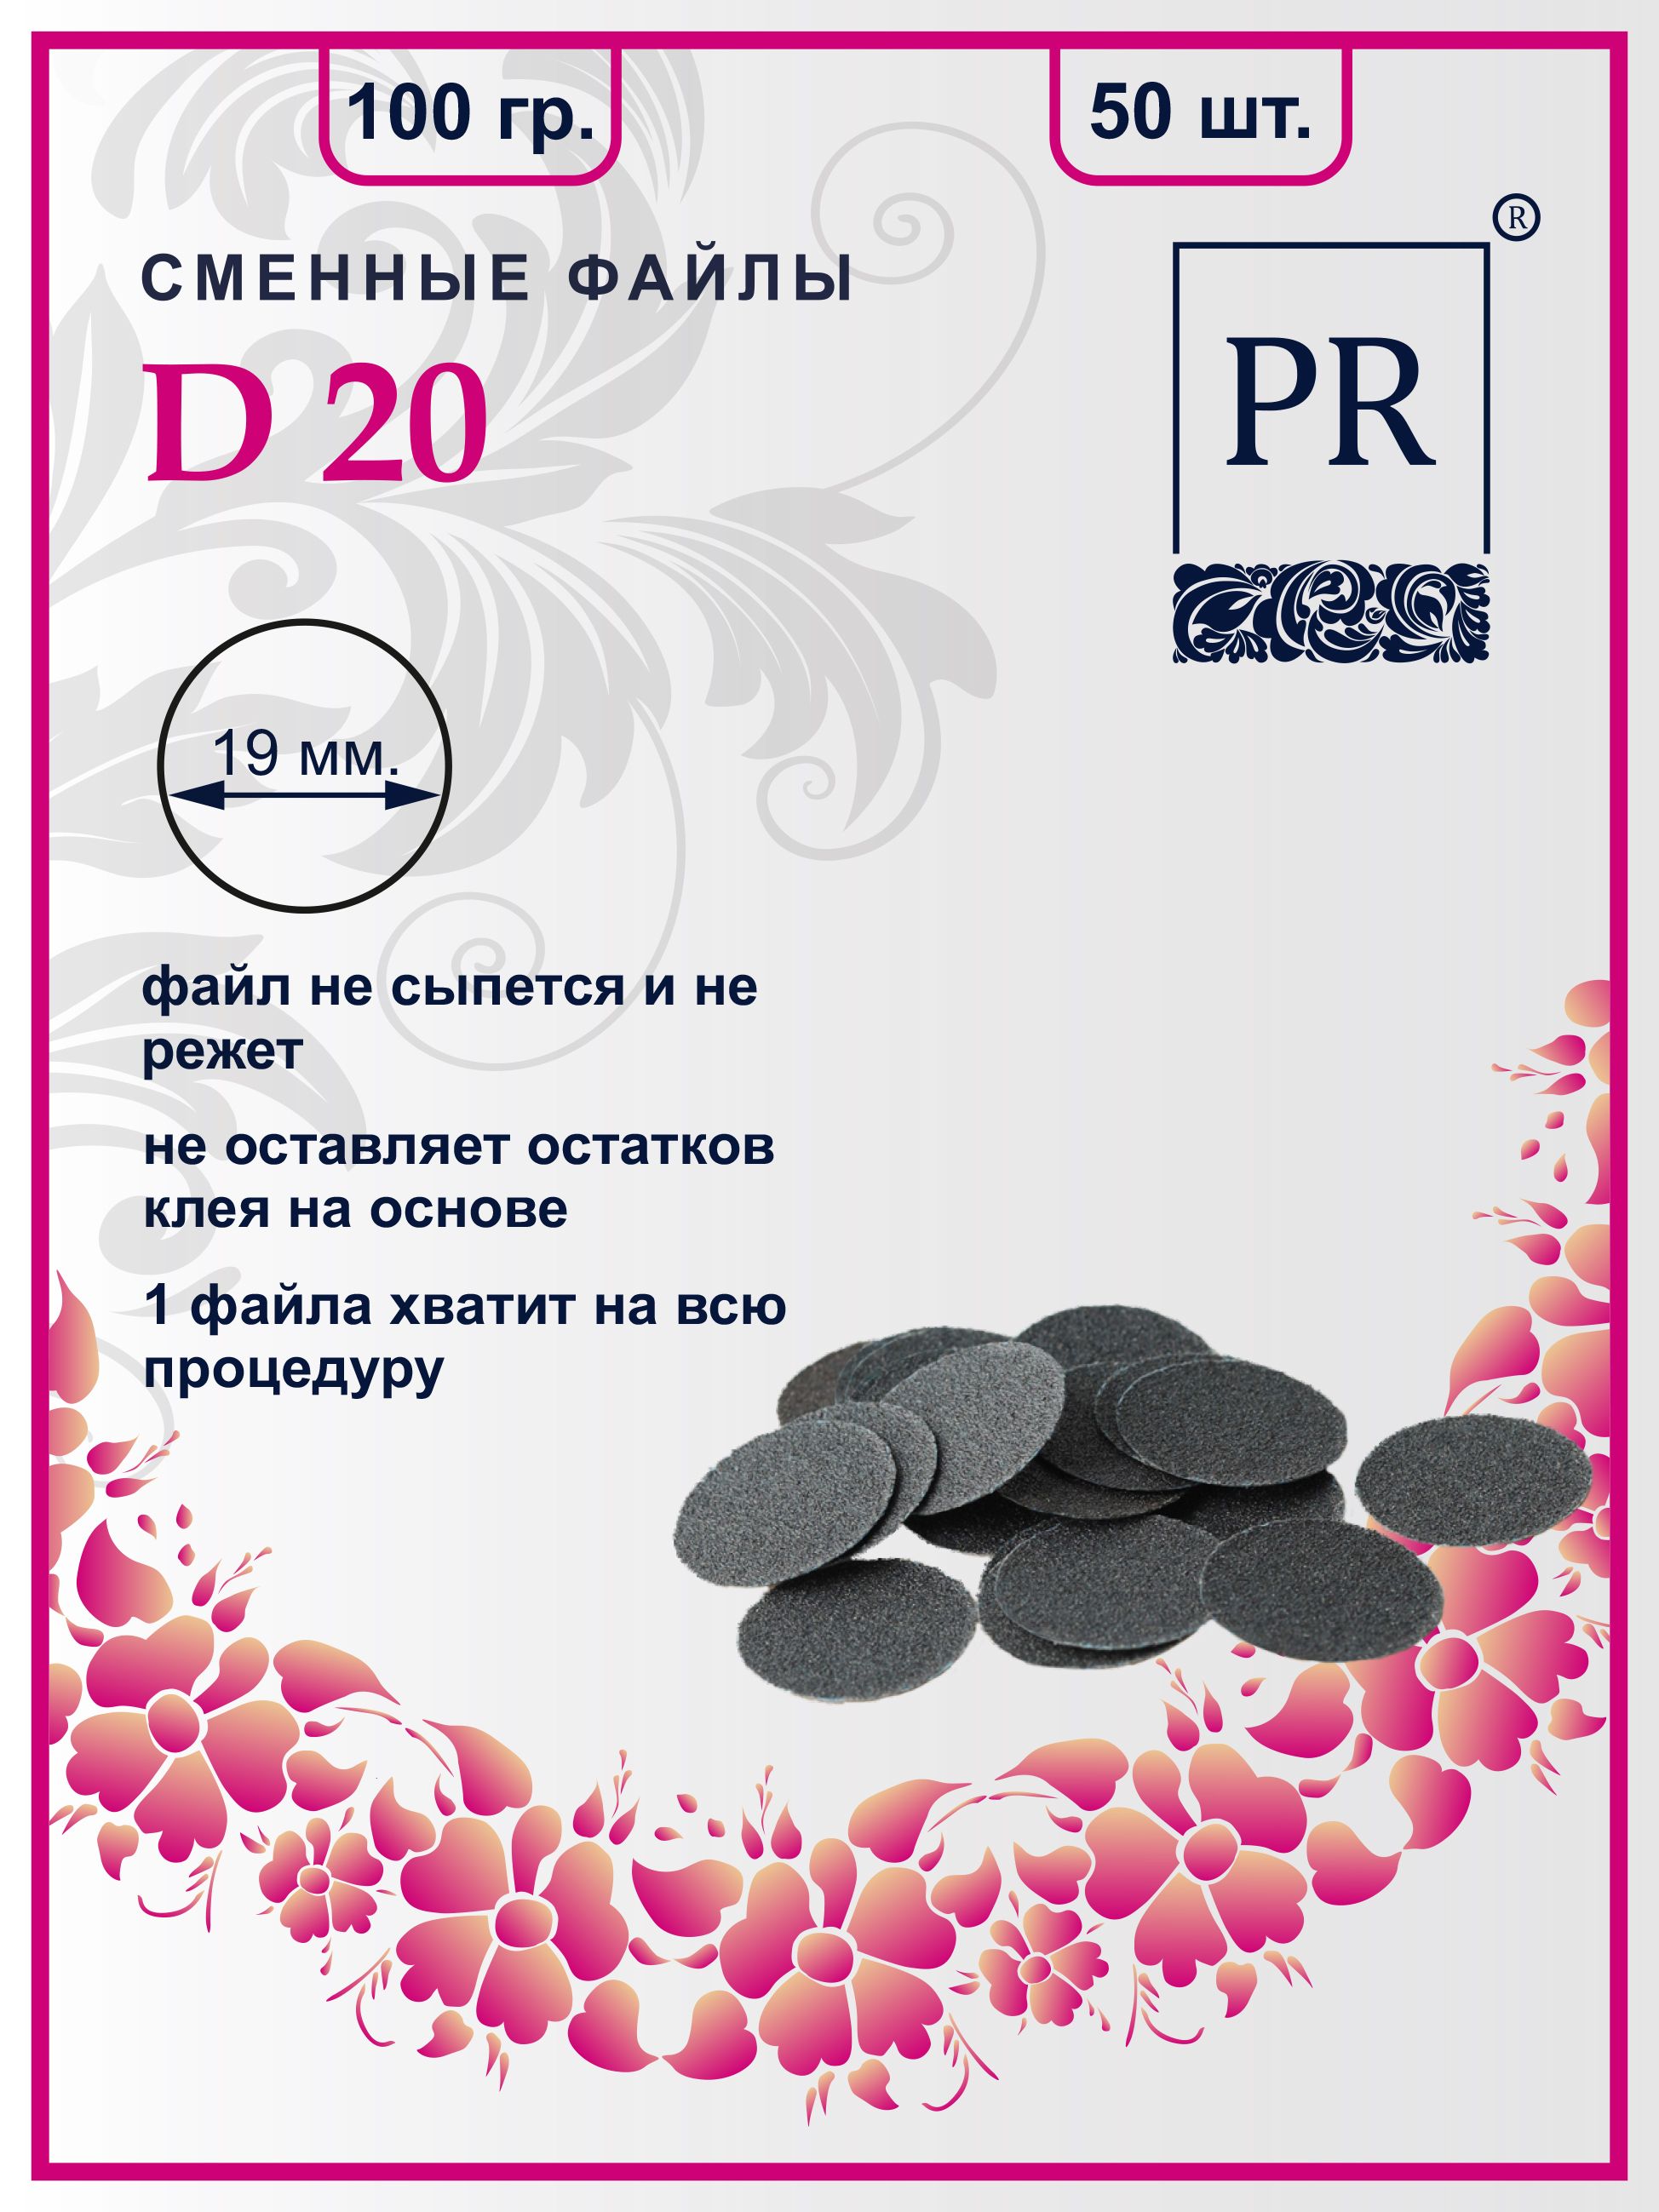 Сменные файлы Pilochki Russia диски для педикюра для диска М 100 грит 50 штук основа и сменные файлы для пилки 18 см 10 шт абразивность 100 чёрный